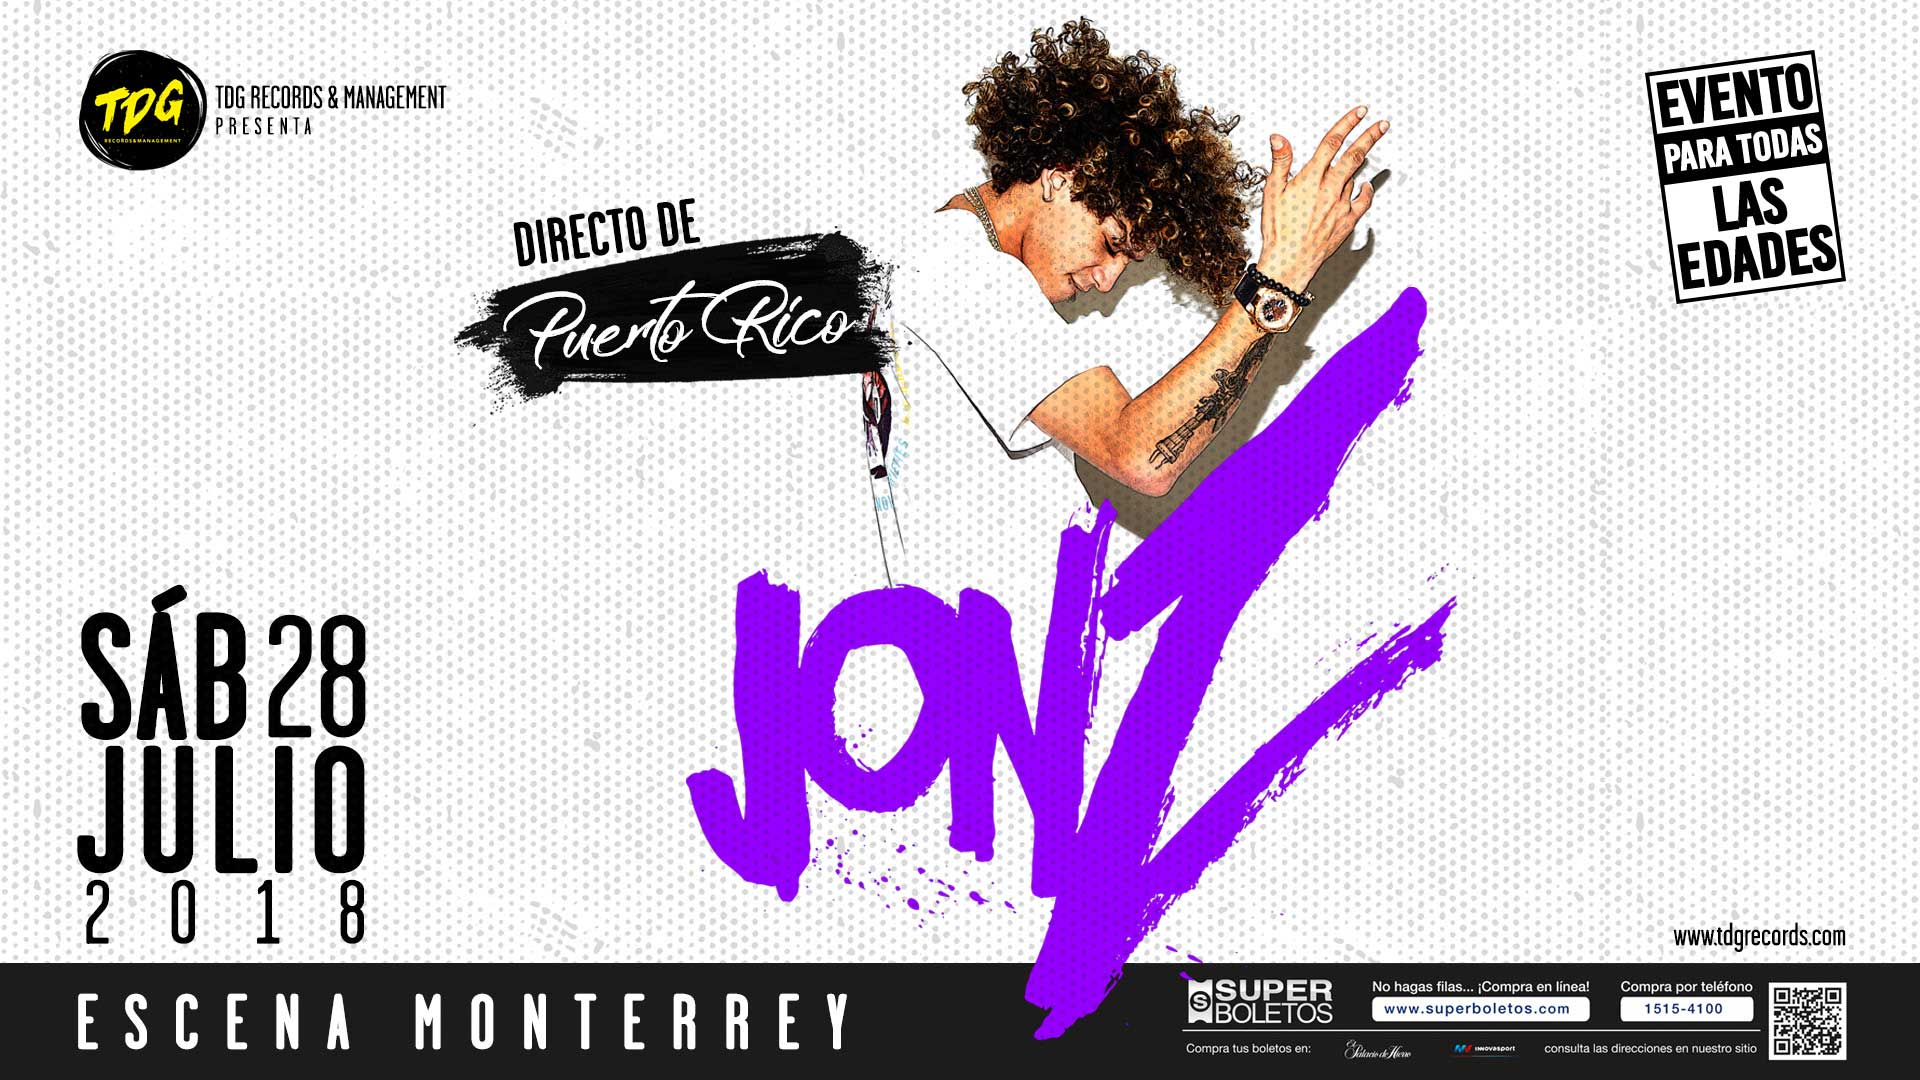 Directo de Puerto Rico llega Jon Z a Monterrey, este 28 julio 2018 en Escena Monterrey.